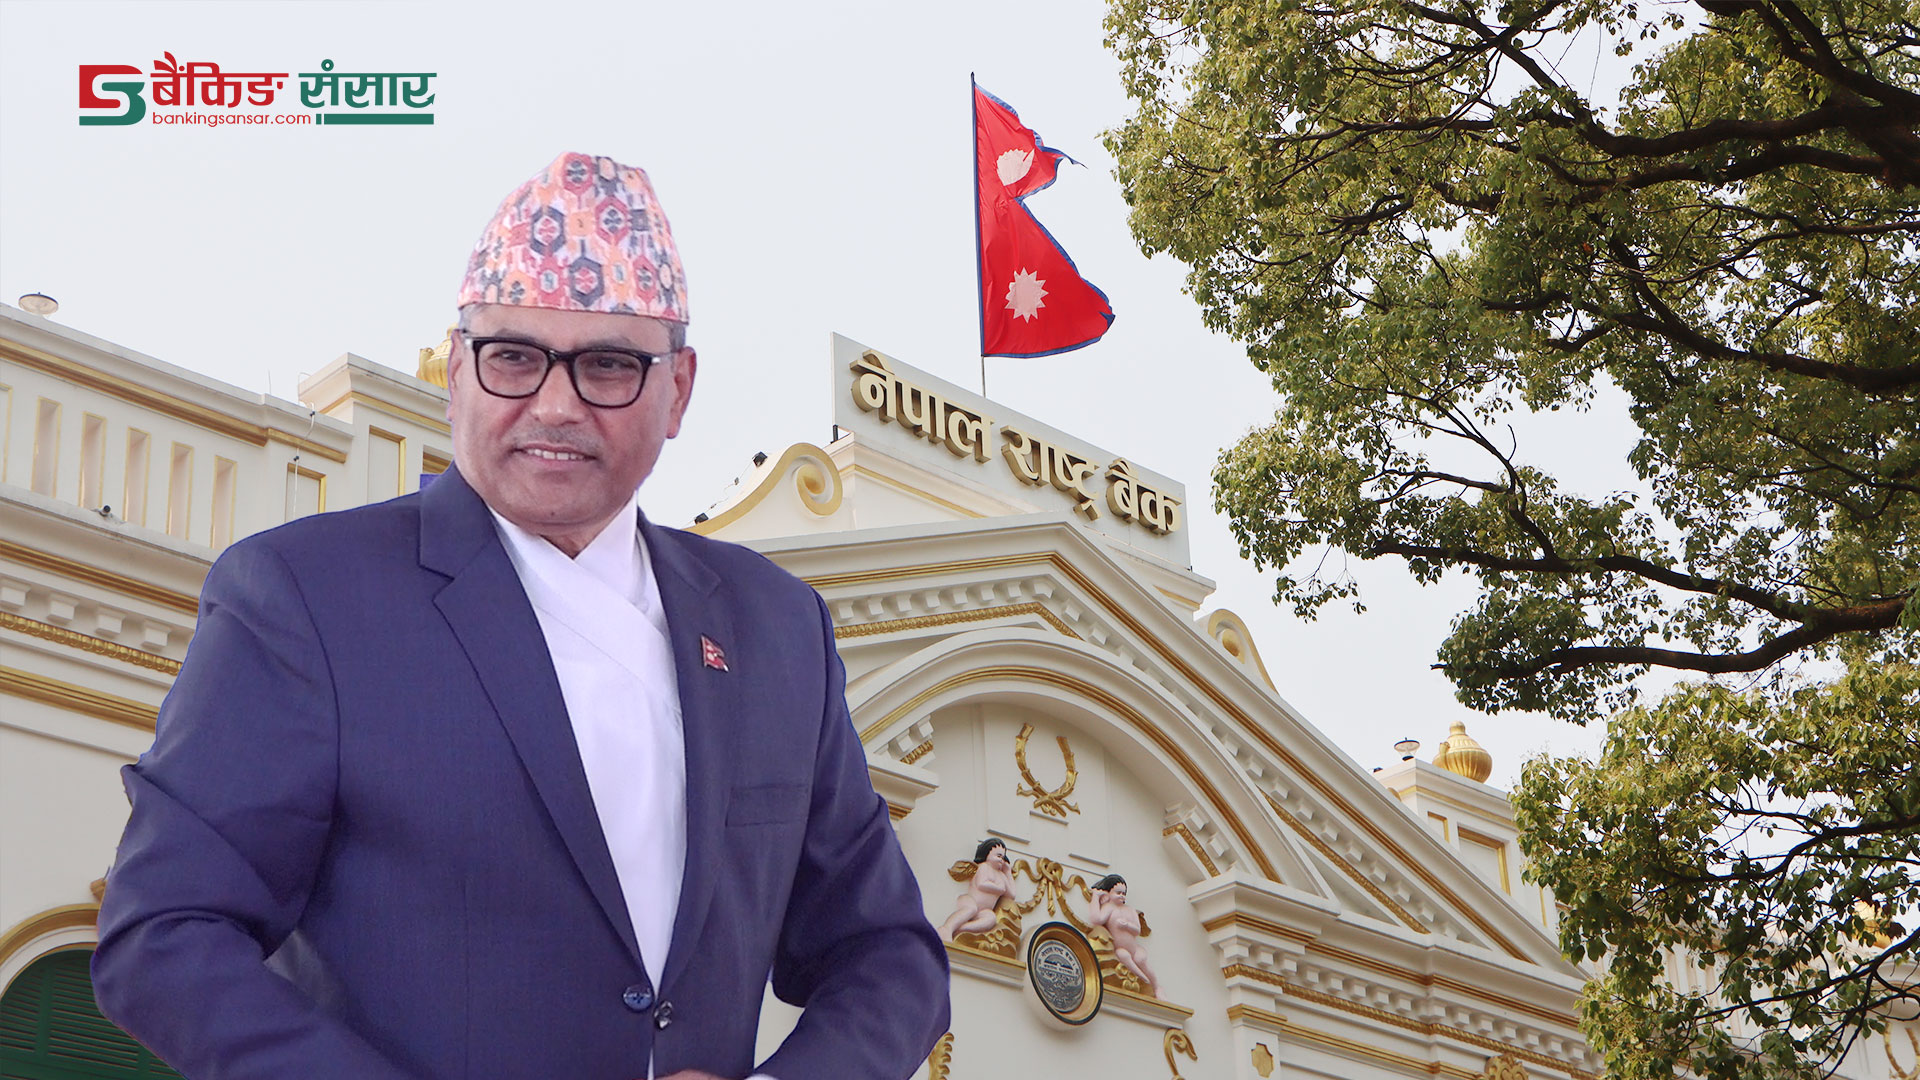 नेपाल राष्ट्र बैंकले मनायो ६९औँ वार्षिकोत्सव, यस्तो छ गभर्नर अधिकारीले प्रस्तुत गरेको वक्तव्यको पूर्णपाठ